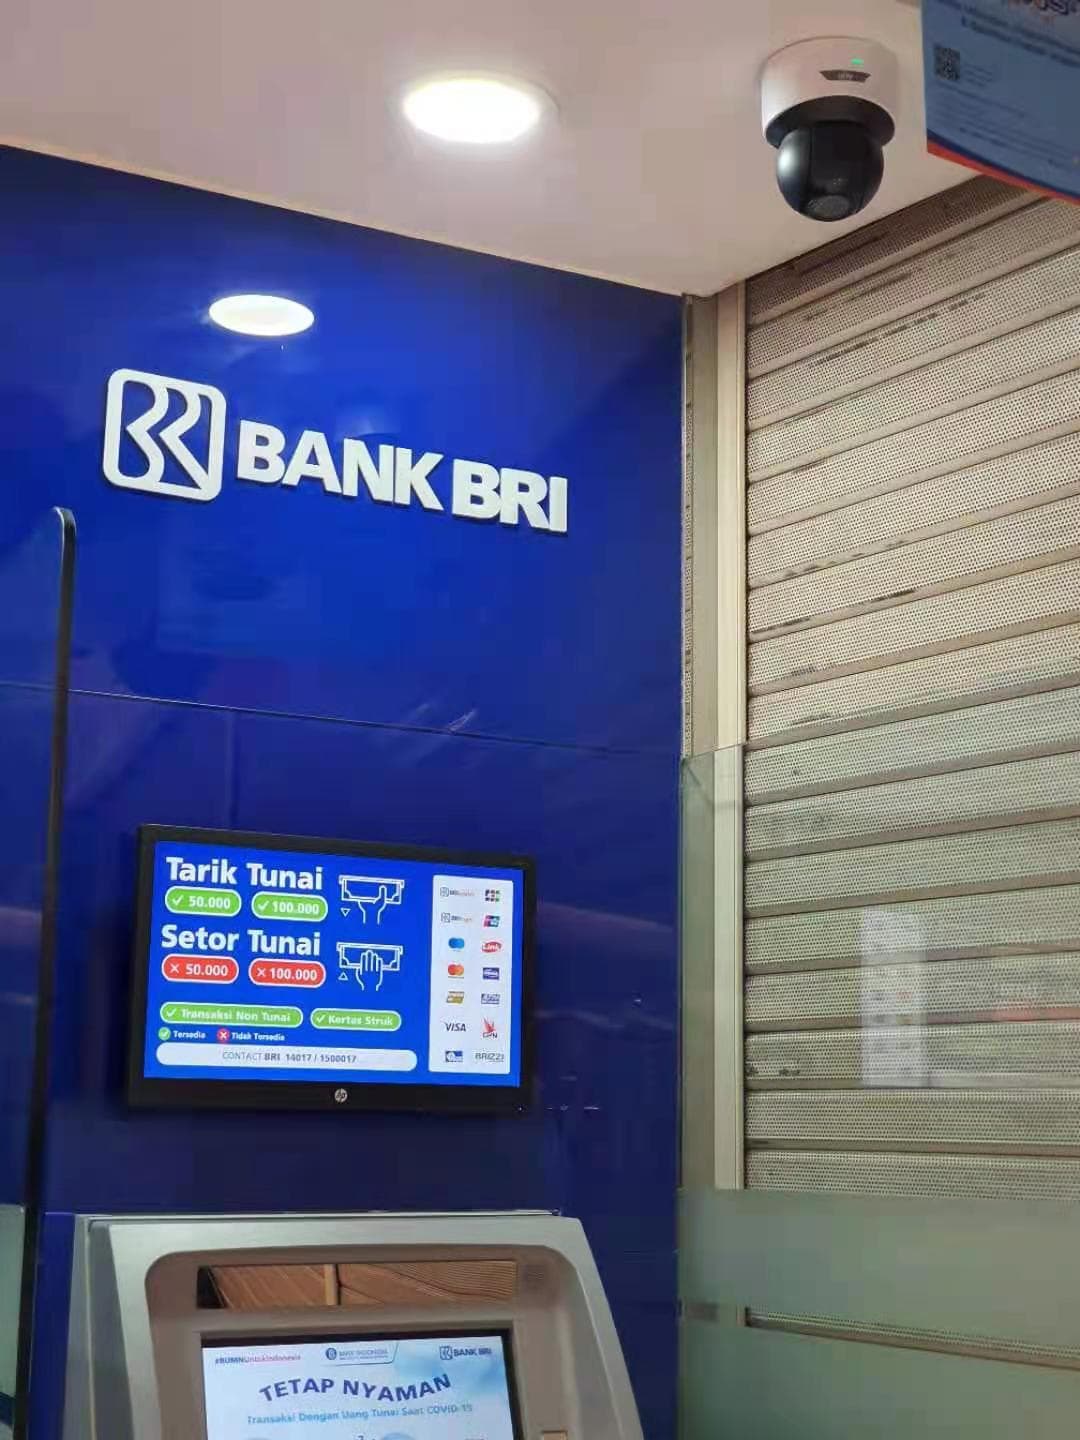 Uniview aporta Seguridad a los cajeros automáticos de ATM BRI, Yakarta